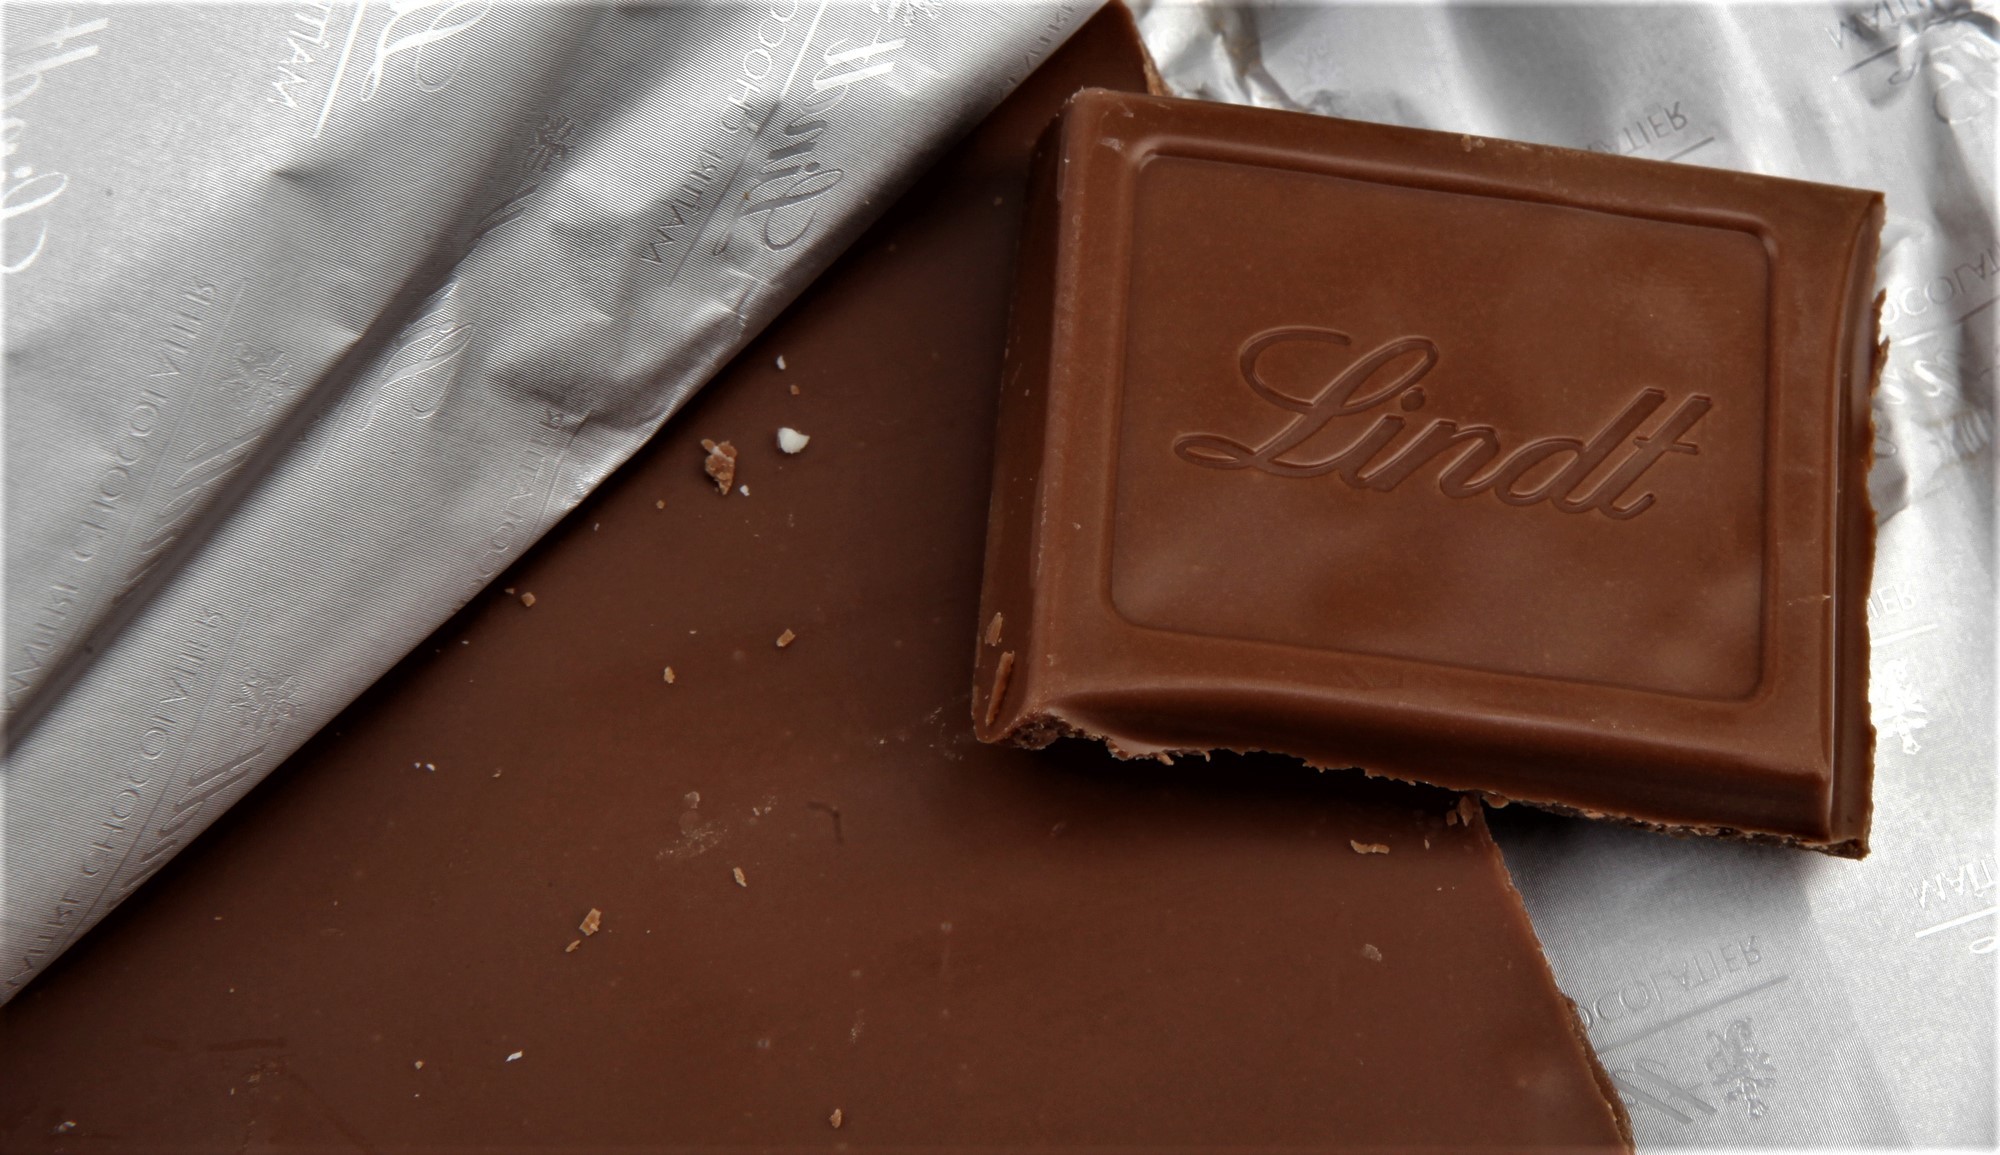 Росконтроль сравнил качество шоколада Lindt в России и в Европе